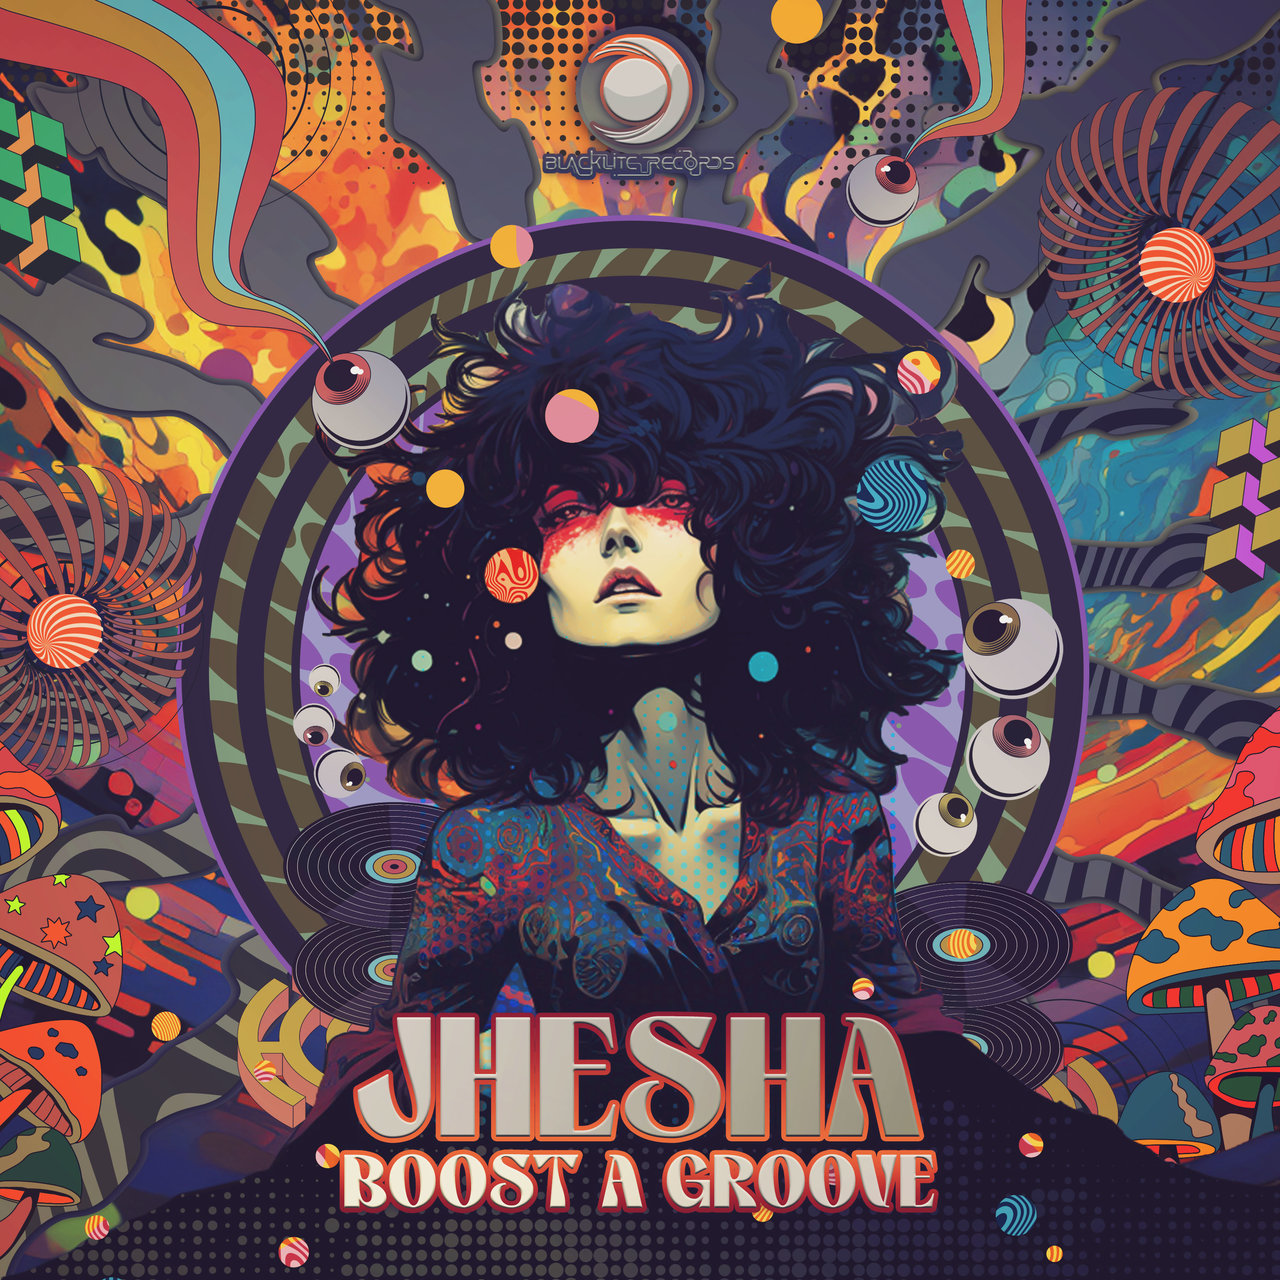 Boost a groove - Jhesha